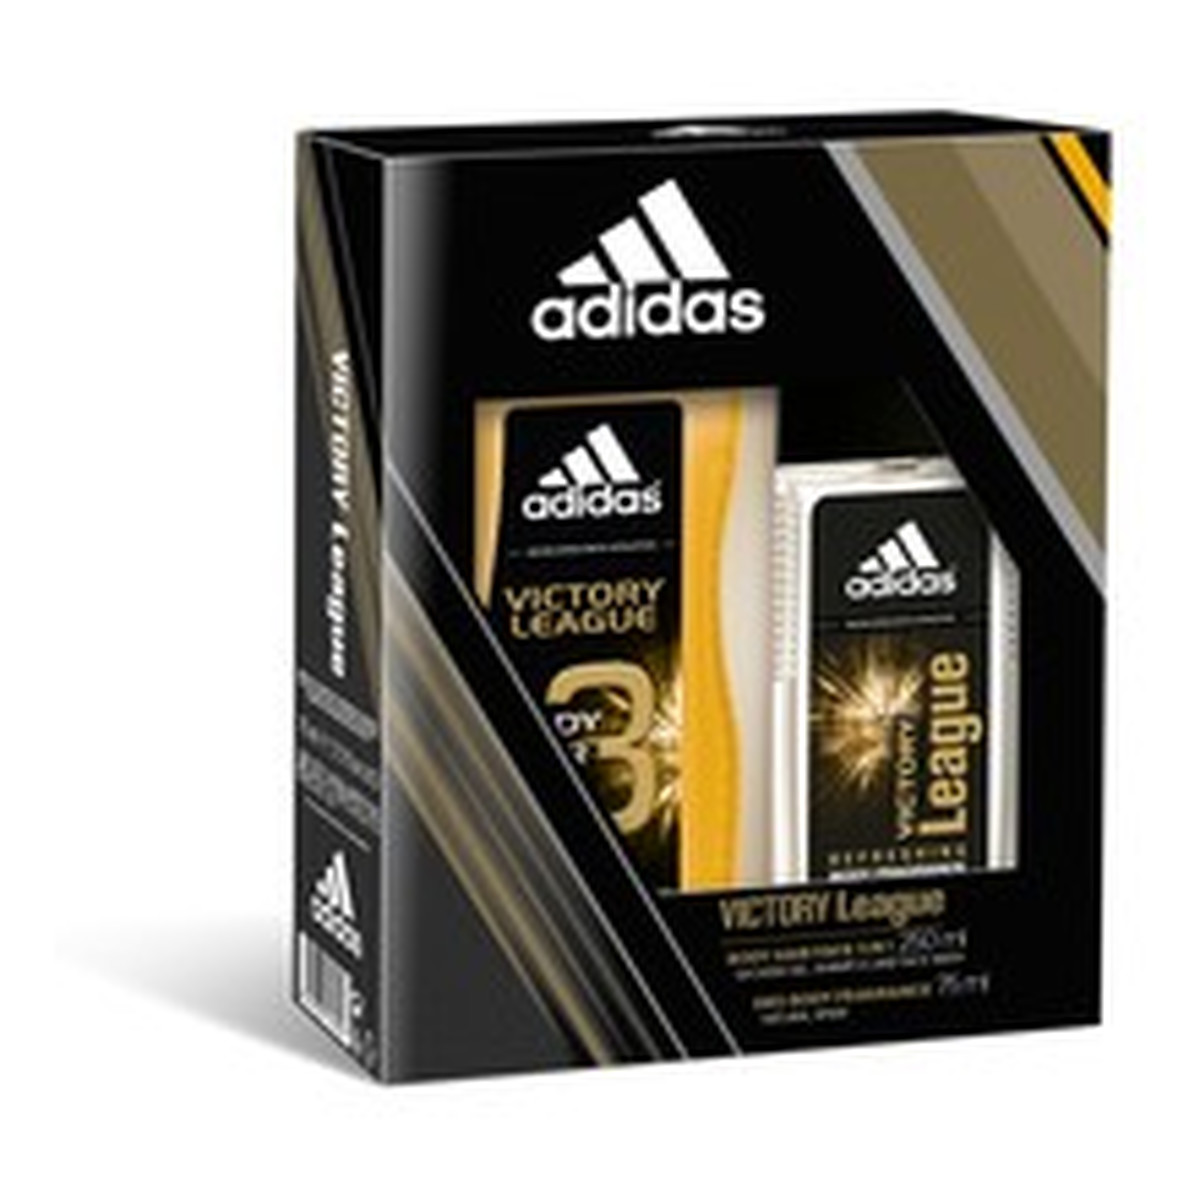 Adidas Victory League Zestaw prezentowy męski dezodorant +żel pod prysznic